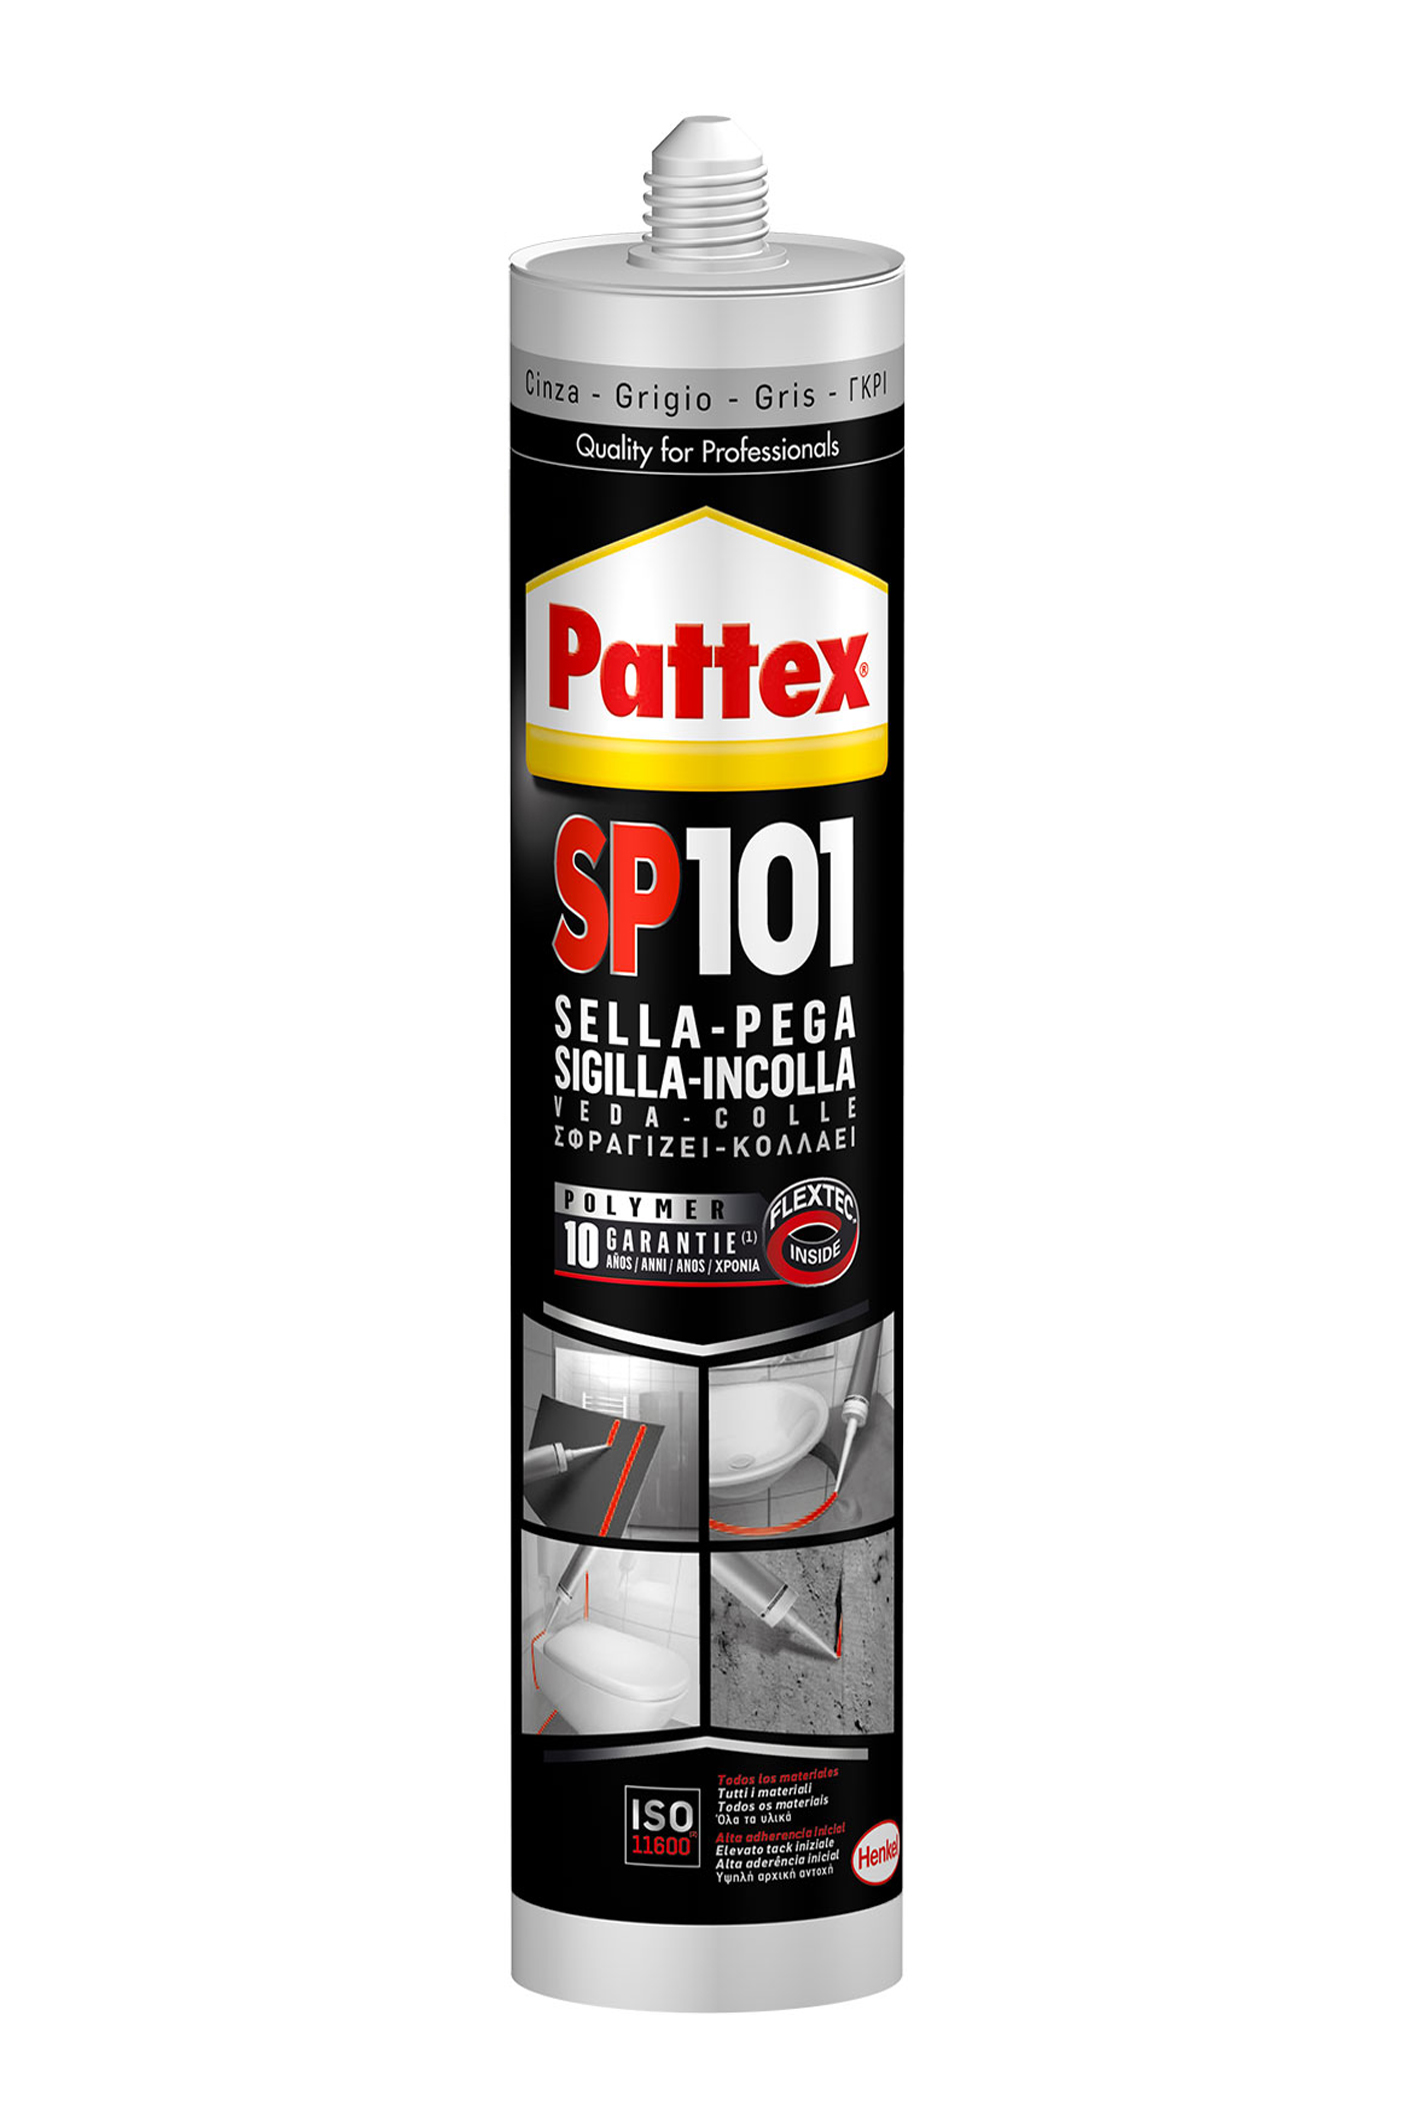 Pattex sp101 grigio 280ml